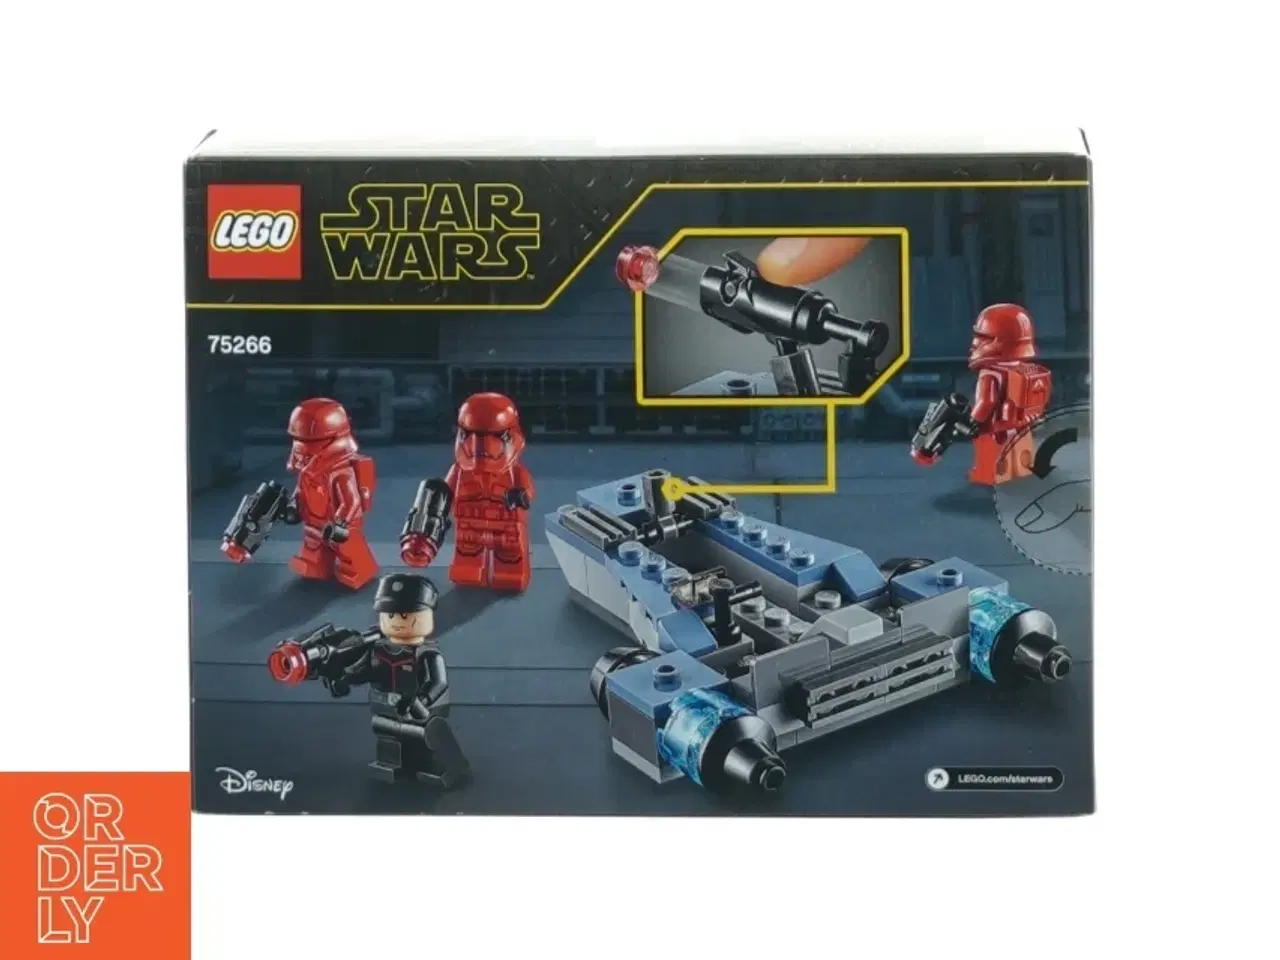 Billede 1 - Star Wars lego model 75266 fra Lego (str. 19 x 14 cm)